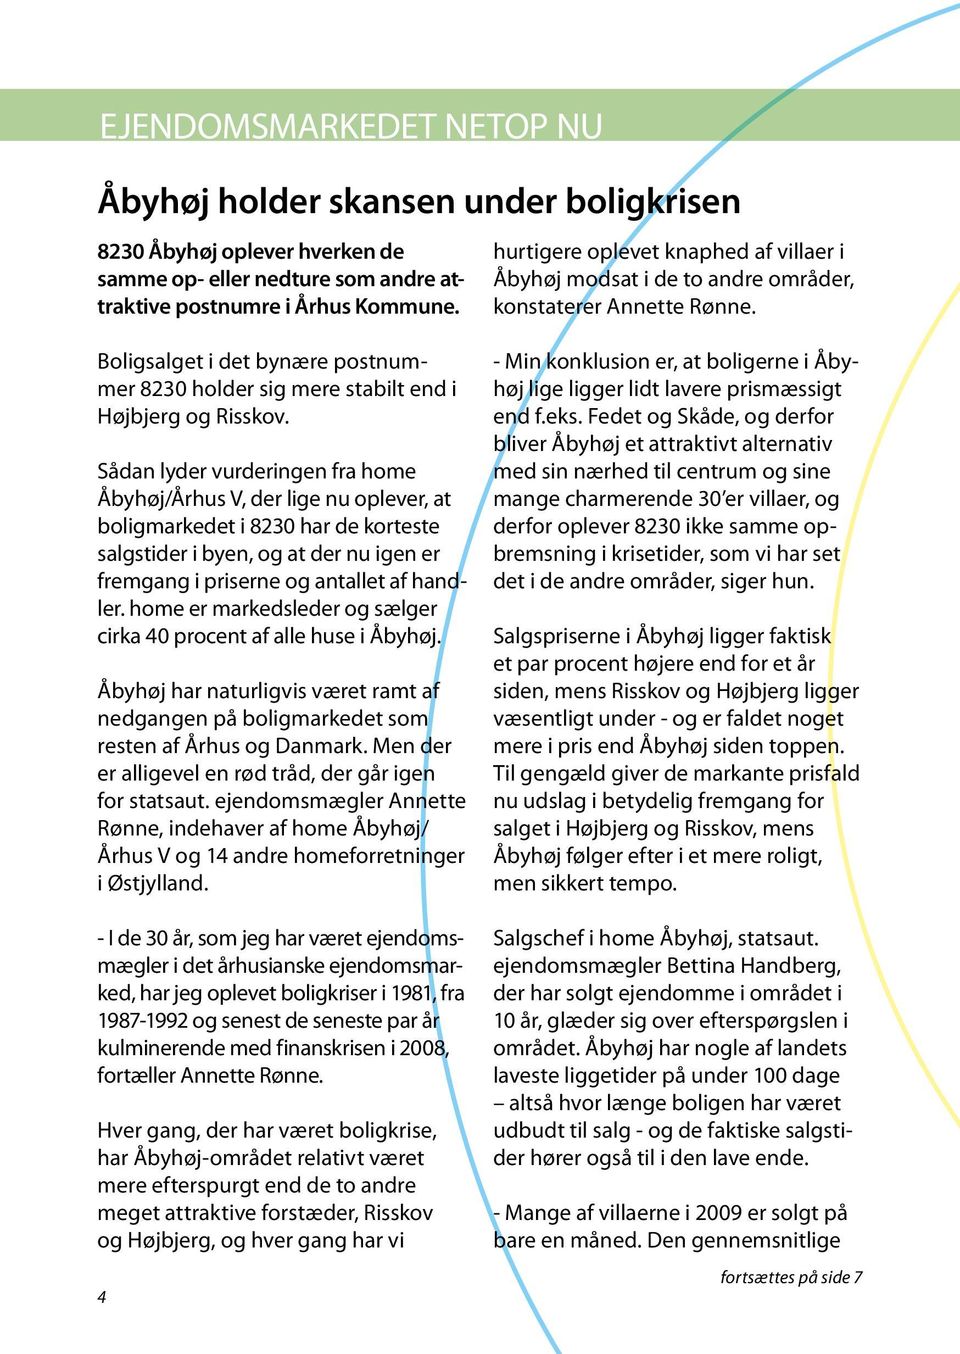 Sådan lyder vurderingen fra home Åbyhøj/Århus V, der lige nu oplever, at boligmarkedet i 8230 har de korteste salgstider i byen, og at der nu igen er fremgang i priserne og antallet af handler.